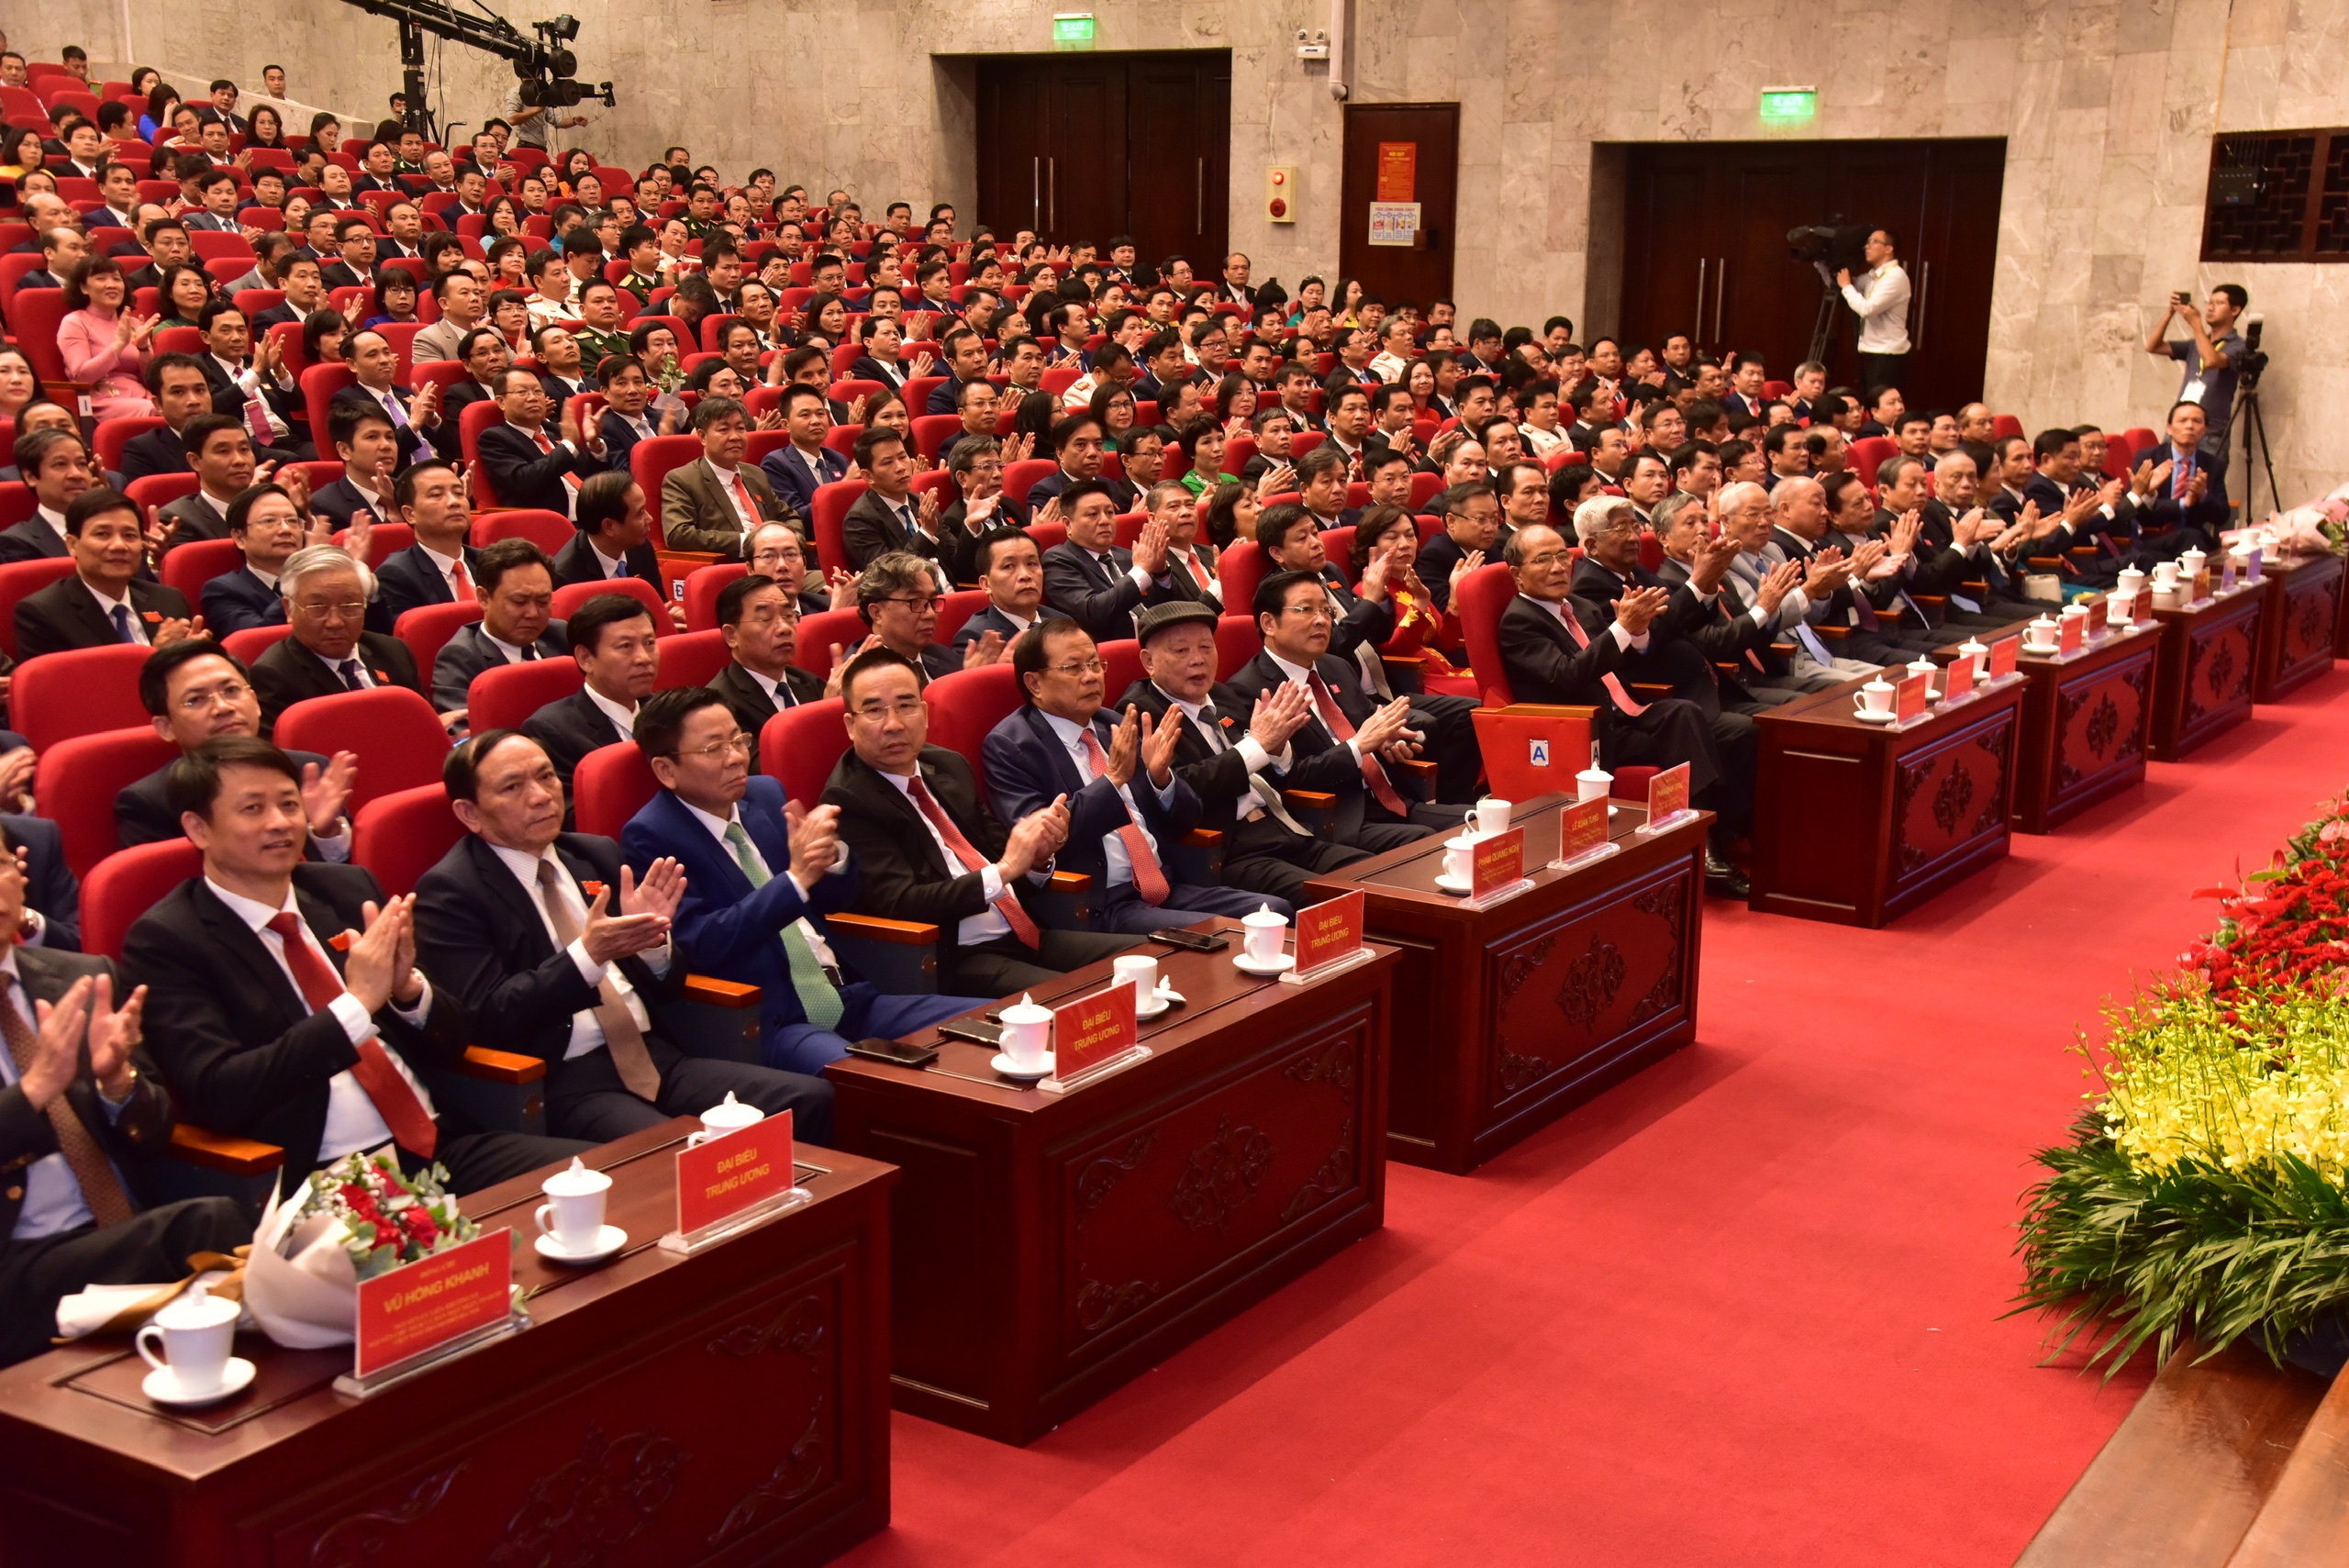 Đại hội đại biểu lần thứ XVII Đảng bộ thành phố Hà Nội thành công tốt đẹp